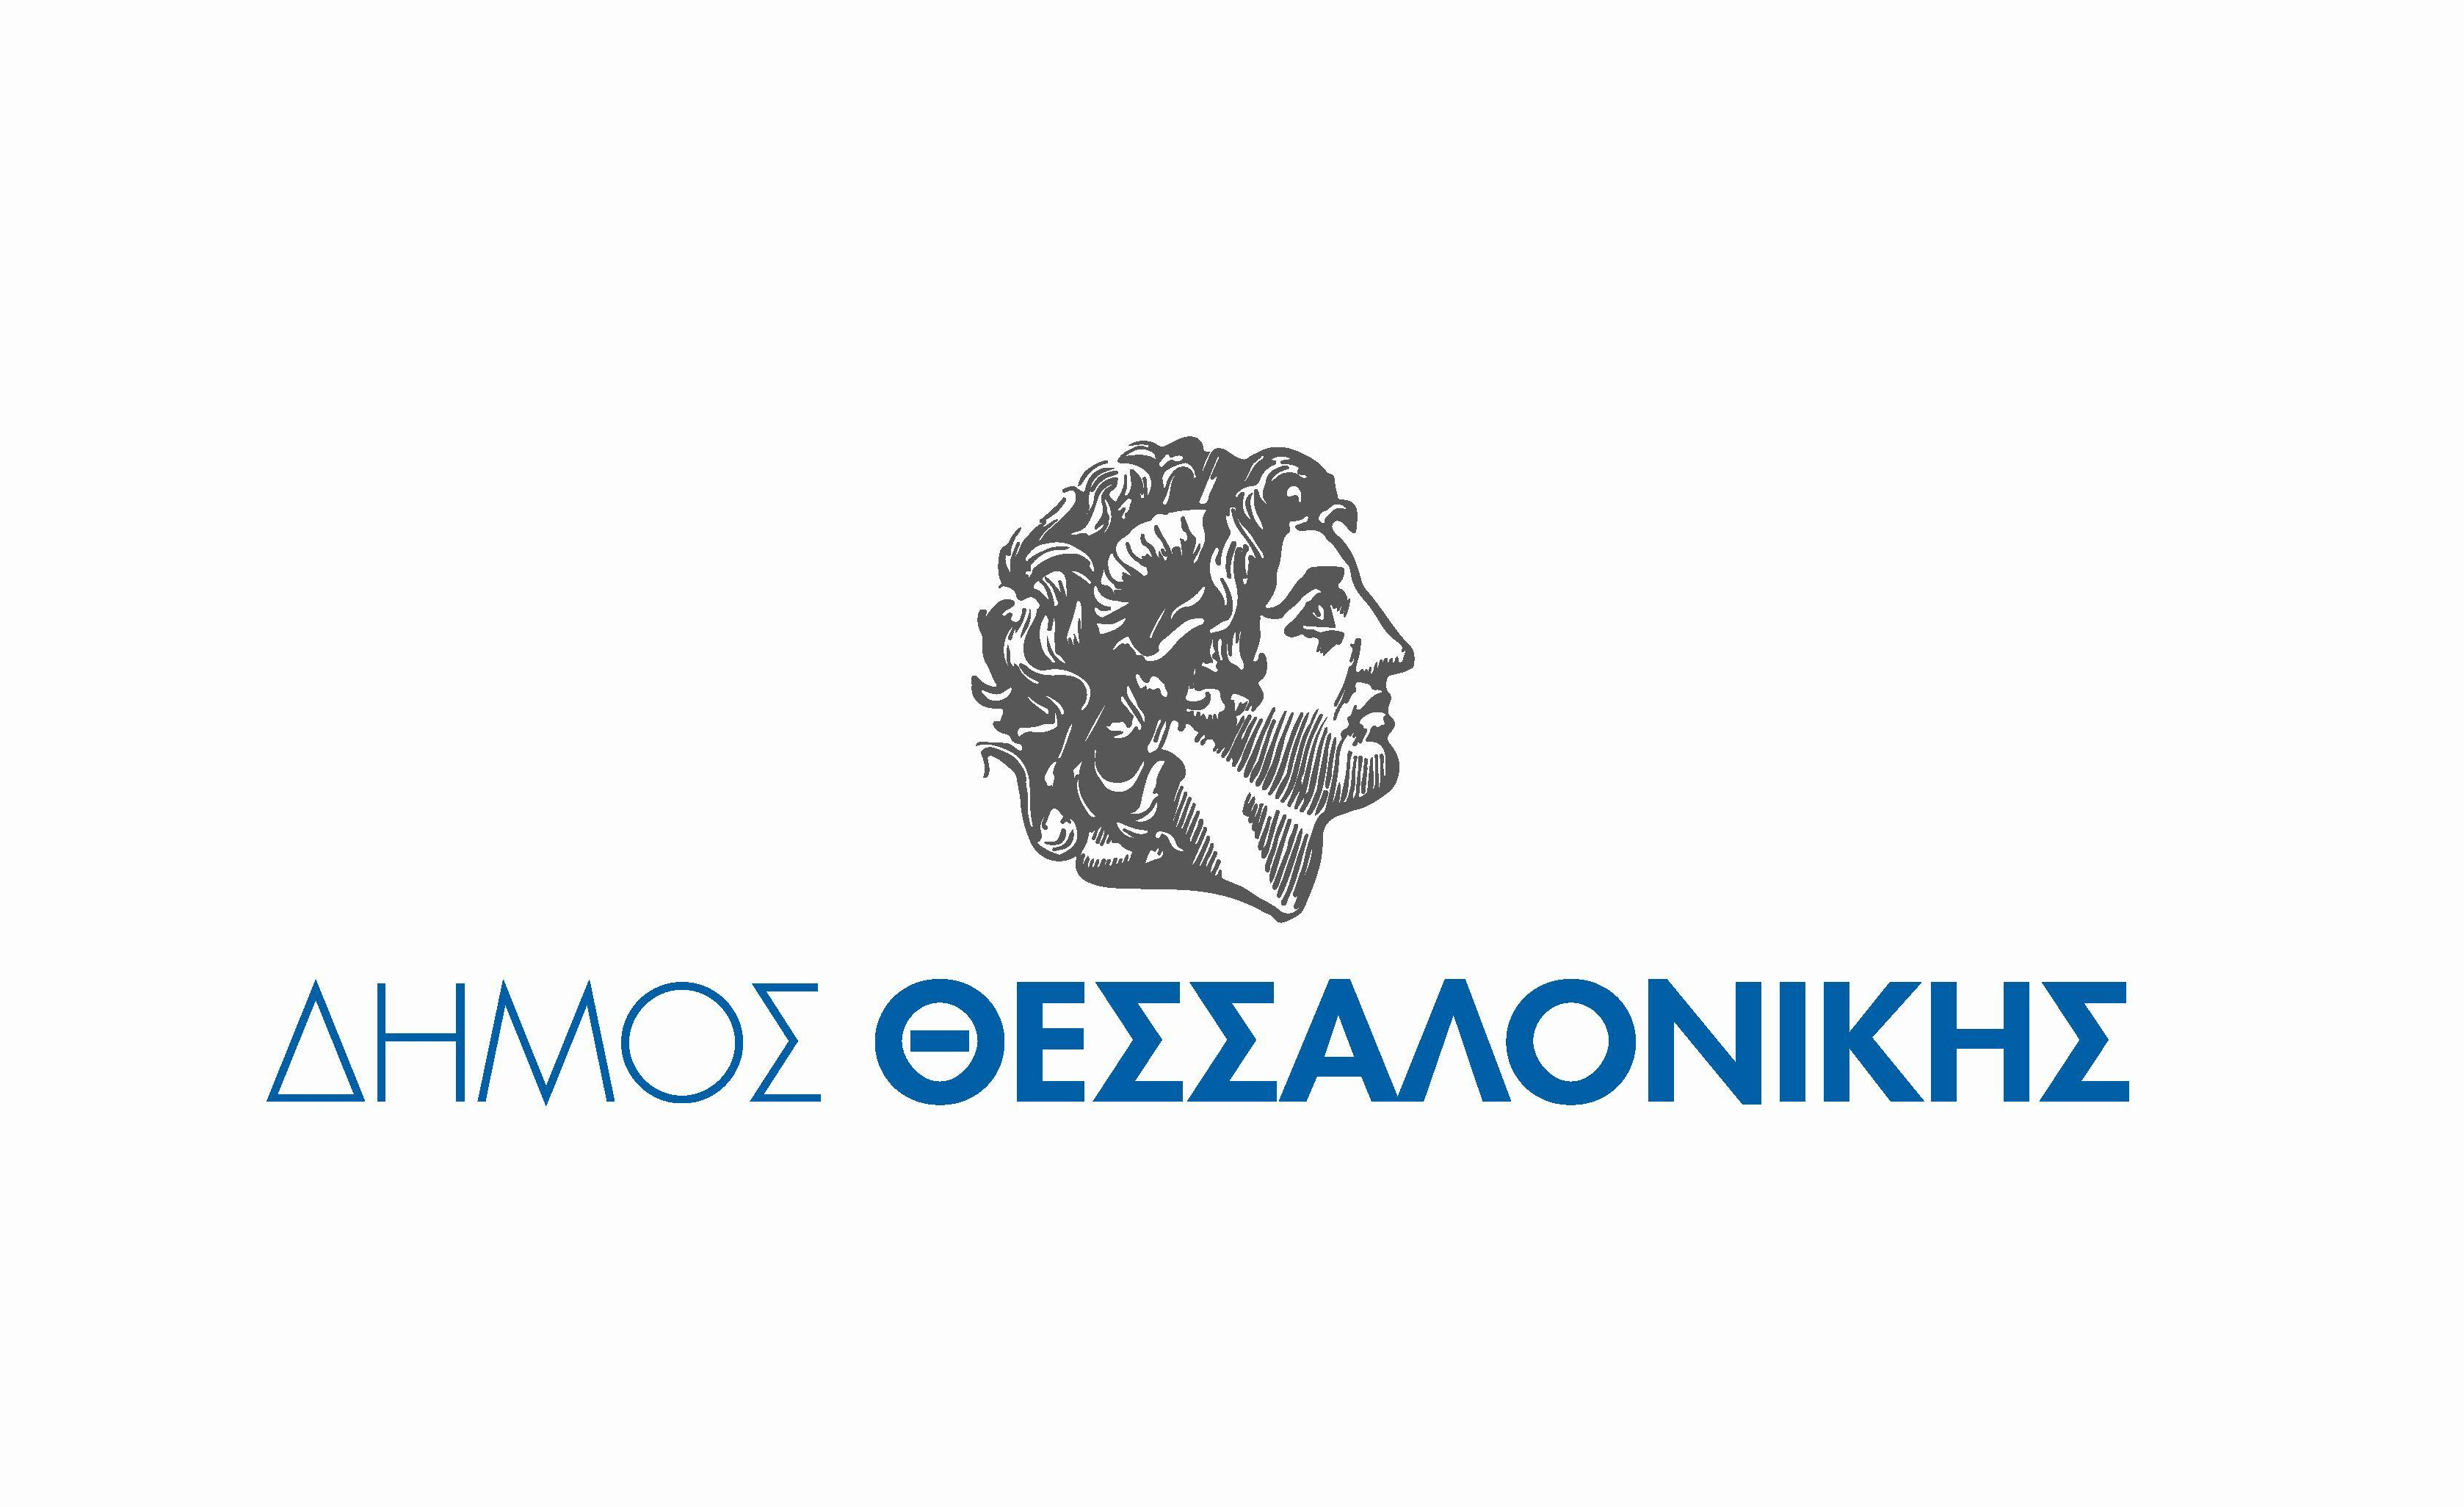 (Ελληνικά) Προμήθεια Αναμνηστικών Ειδών Εκπαιδευτικών Προγραμμάτων – Δήμος Θεσσαλονίκης